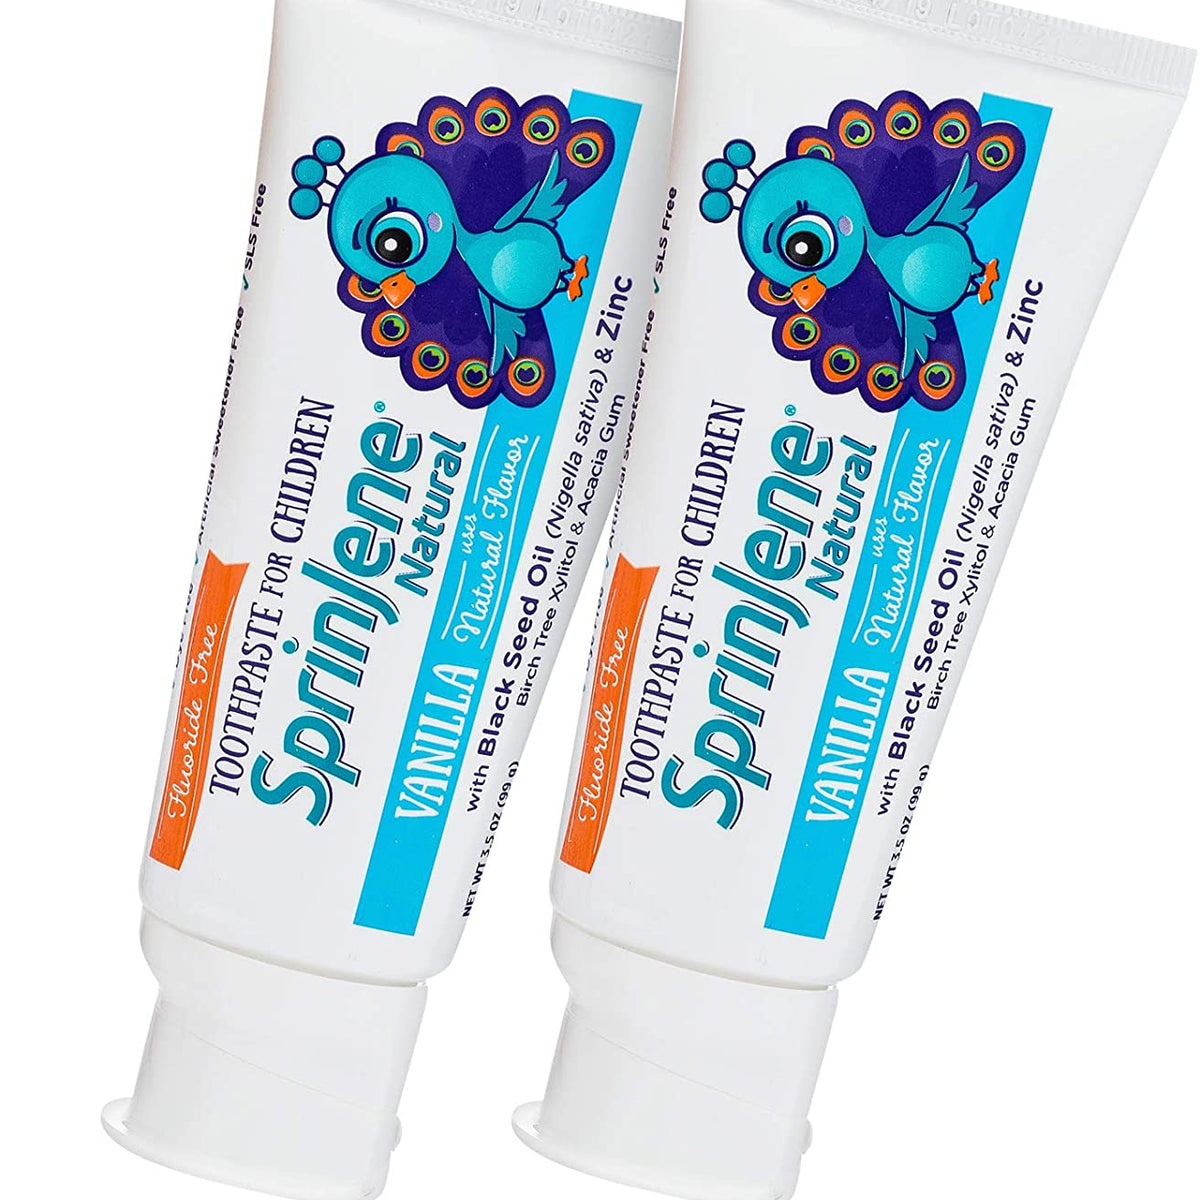 Children's Vanilla Toothpaste Fluoride free by SprinJene Natural®